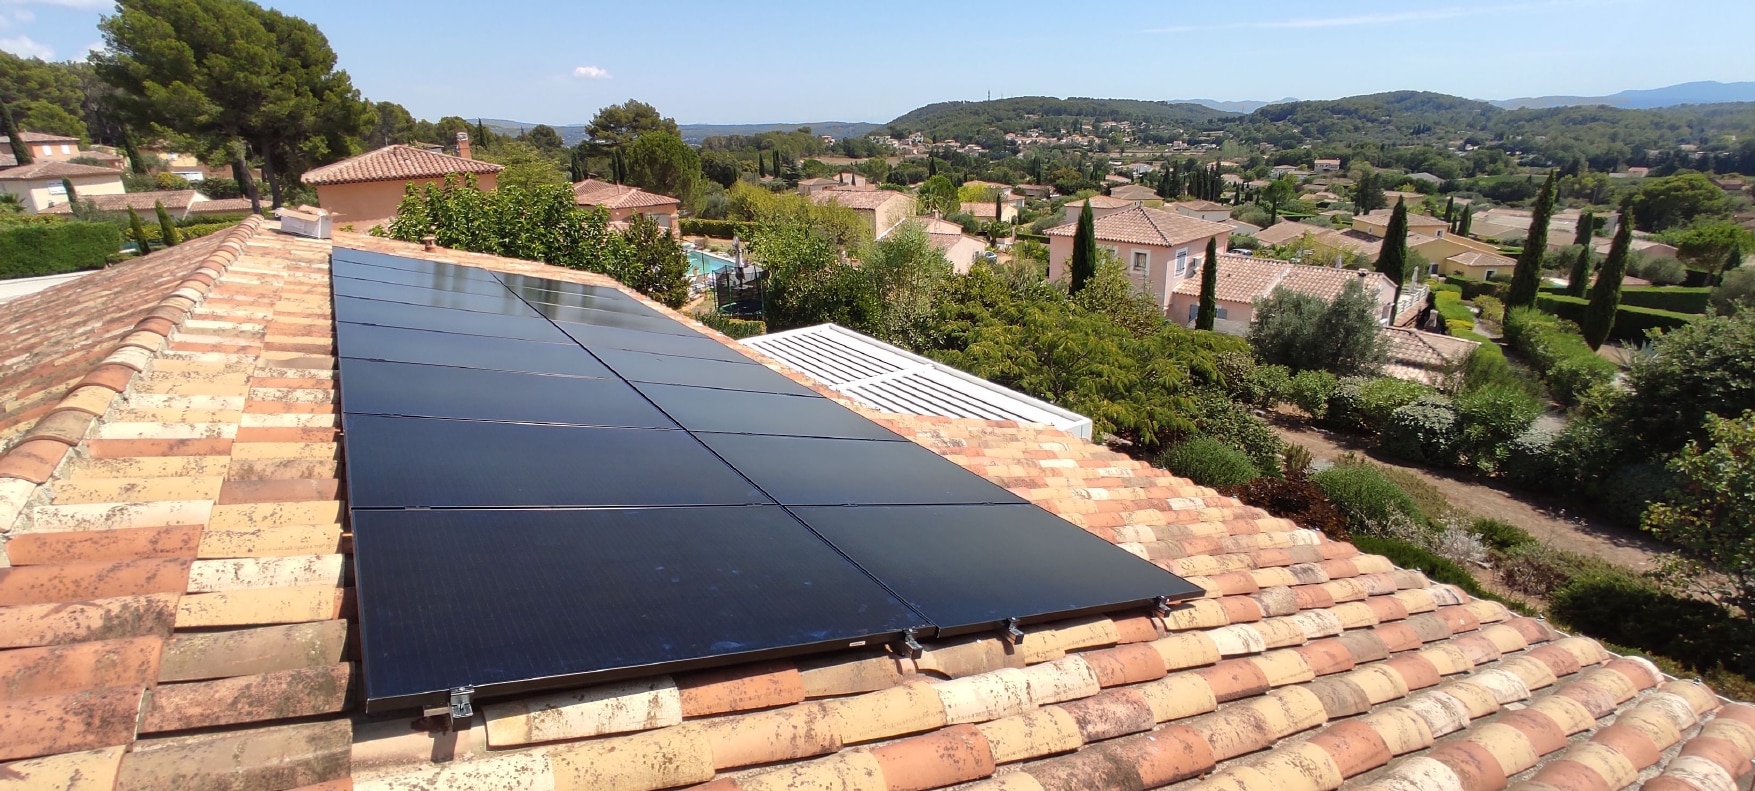 <span class="popup-mms-13">Installations de panneaux solaires sur toiture inclinée - 6560W</span>